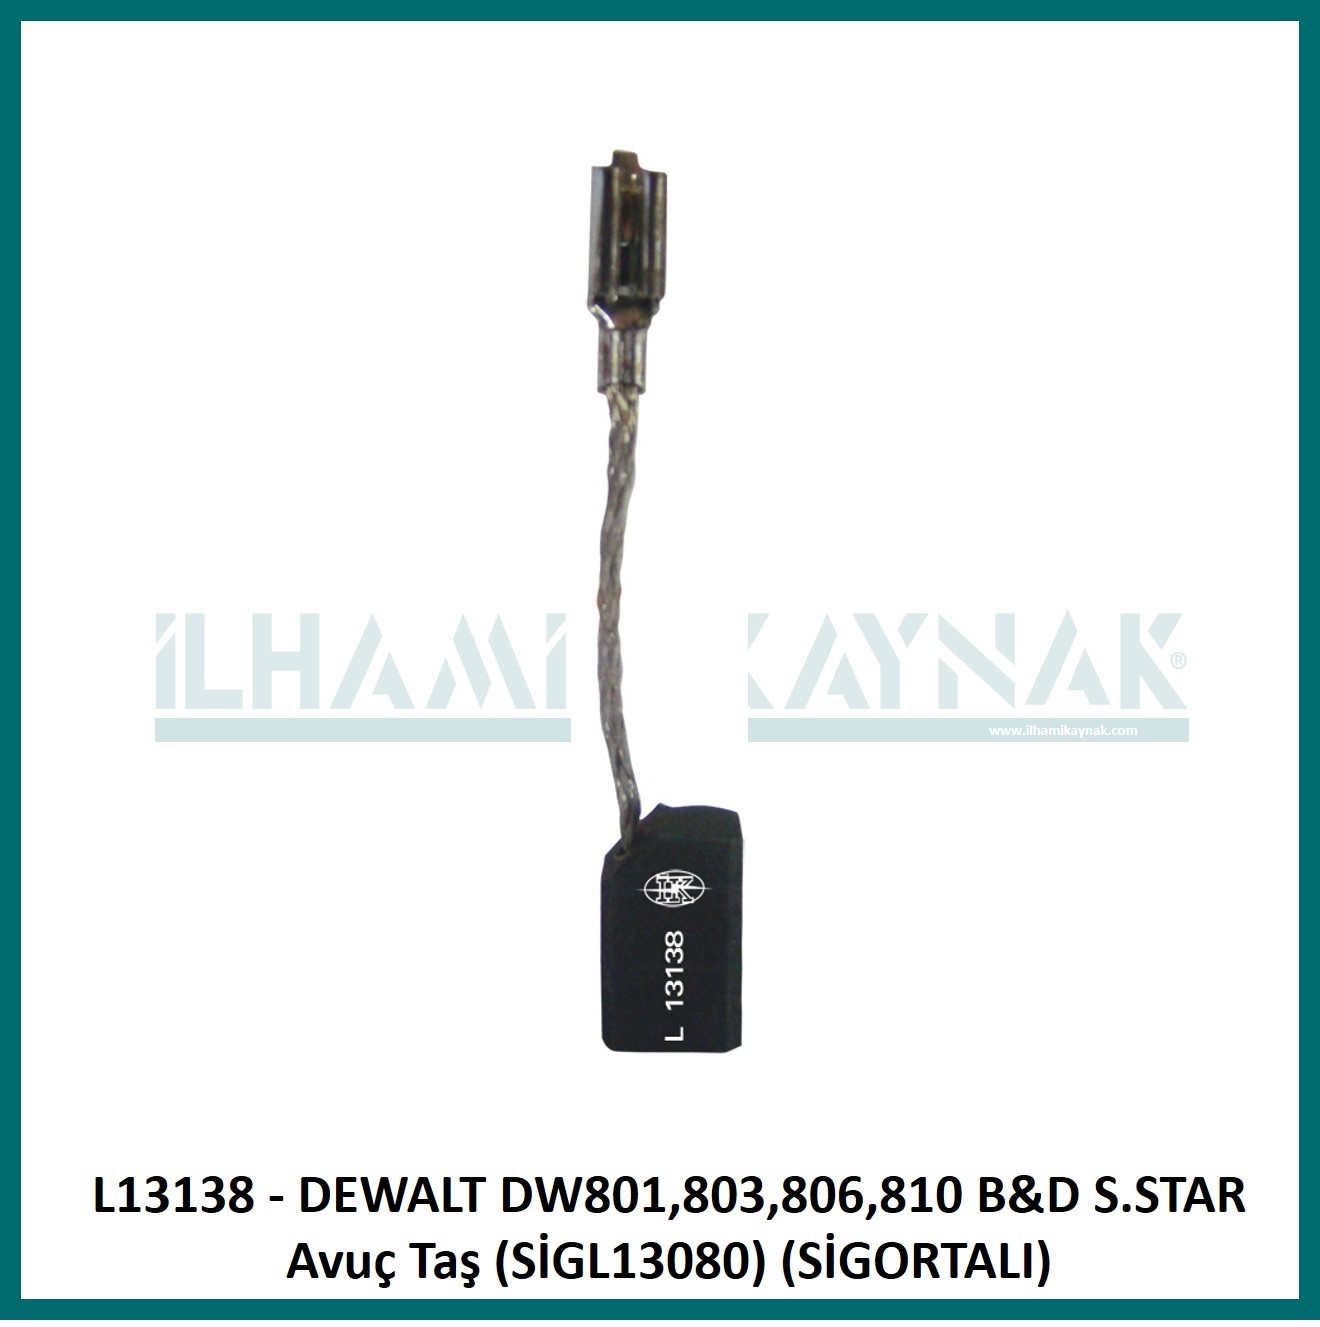 L13138 - DEWALT DW801,803,806,810 B&D S.STAR Avuç Taş (SİGL13080) (SİGORTALI) - 6.3*8*13.5 mm - Minimum Satın Alım: 10 Adet.